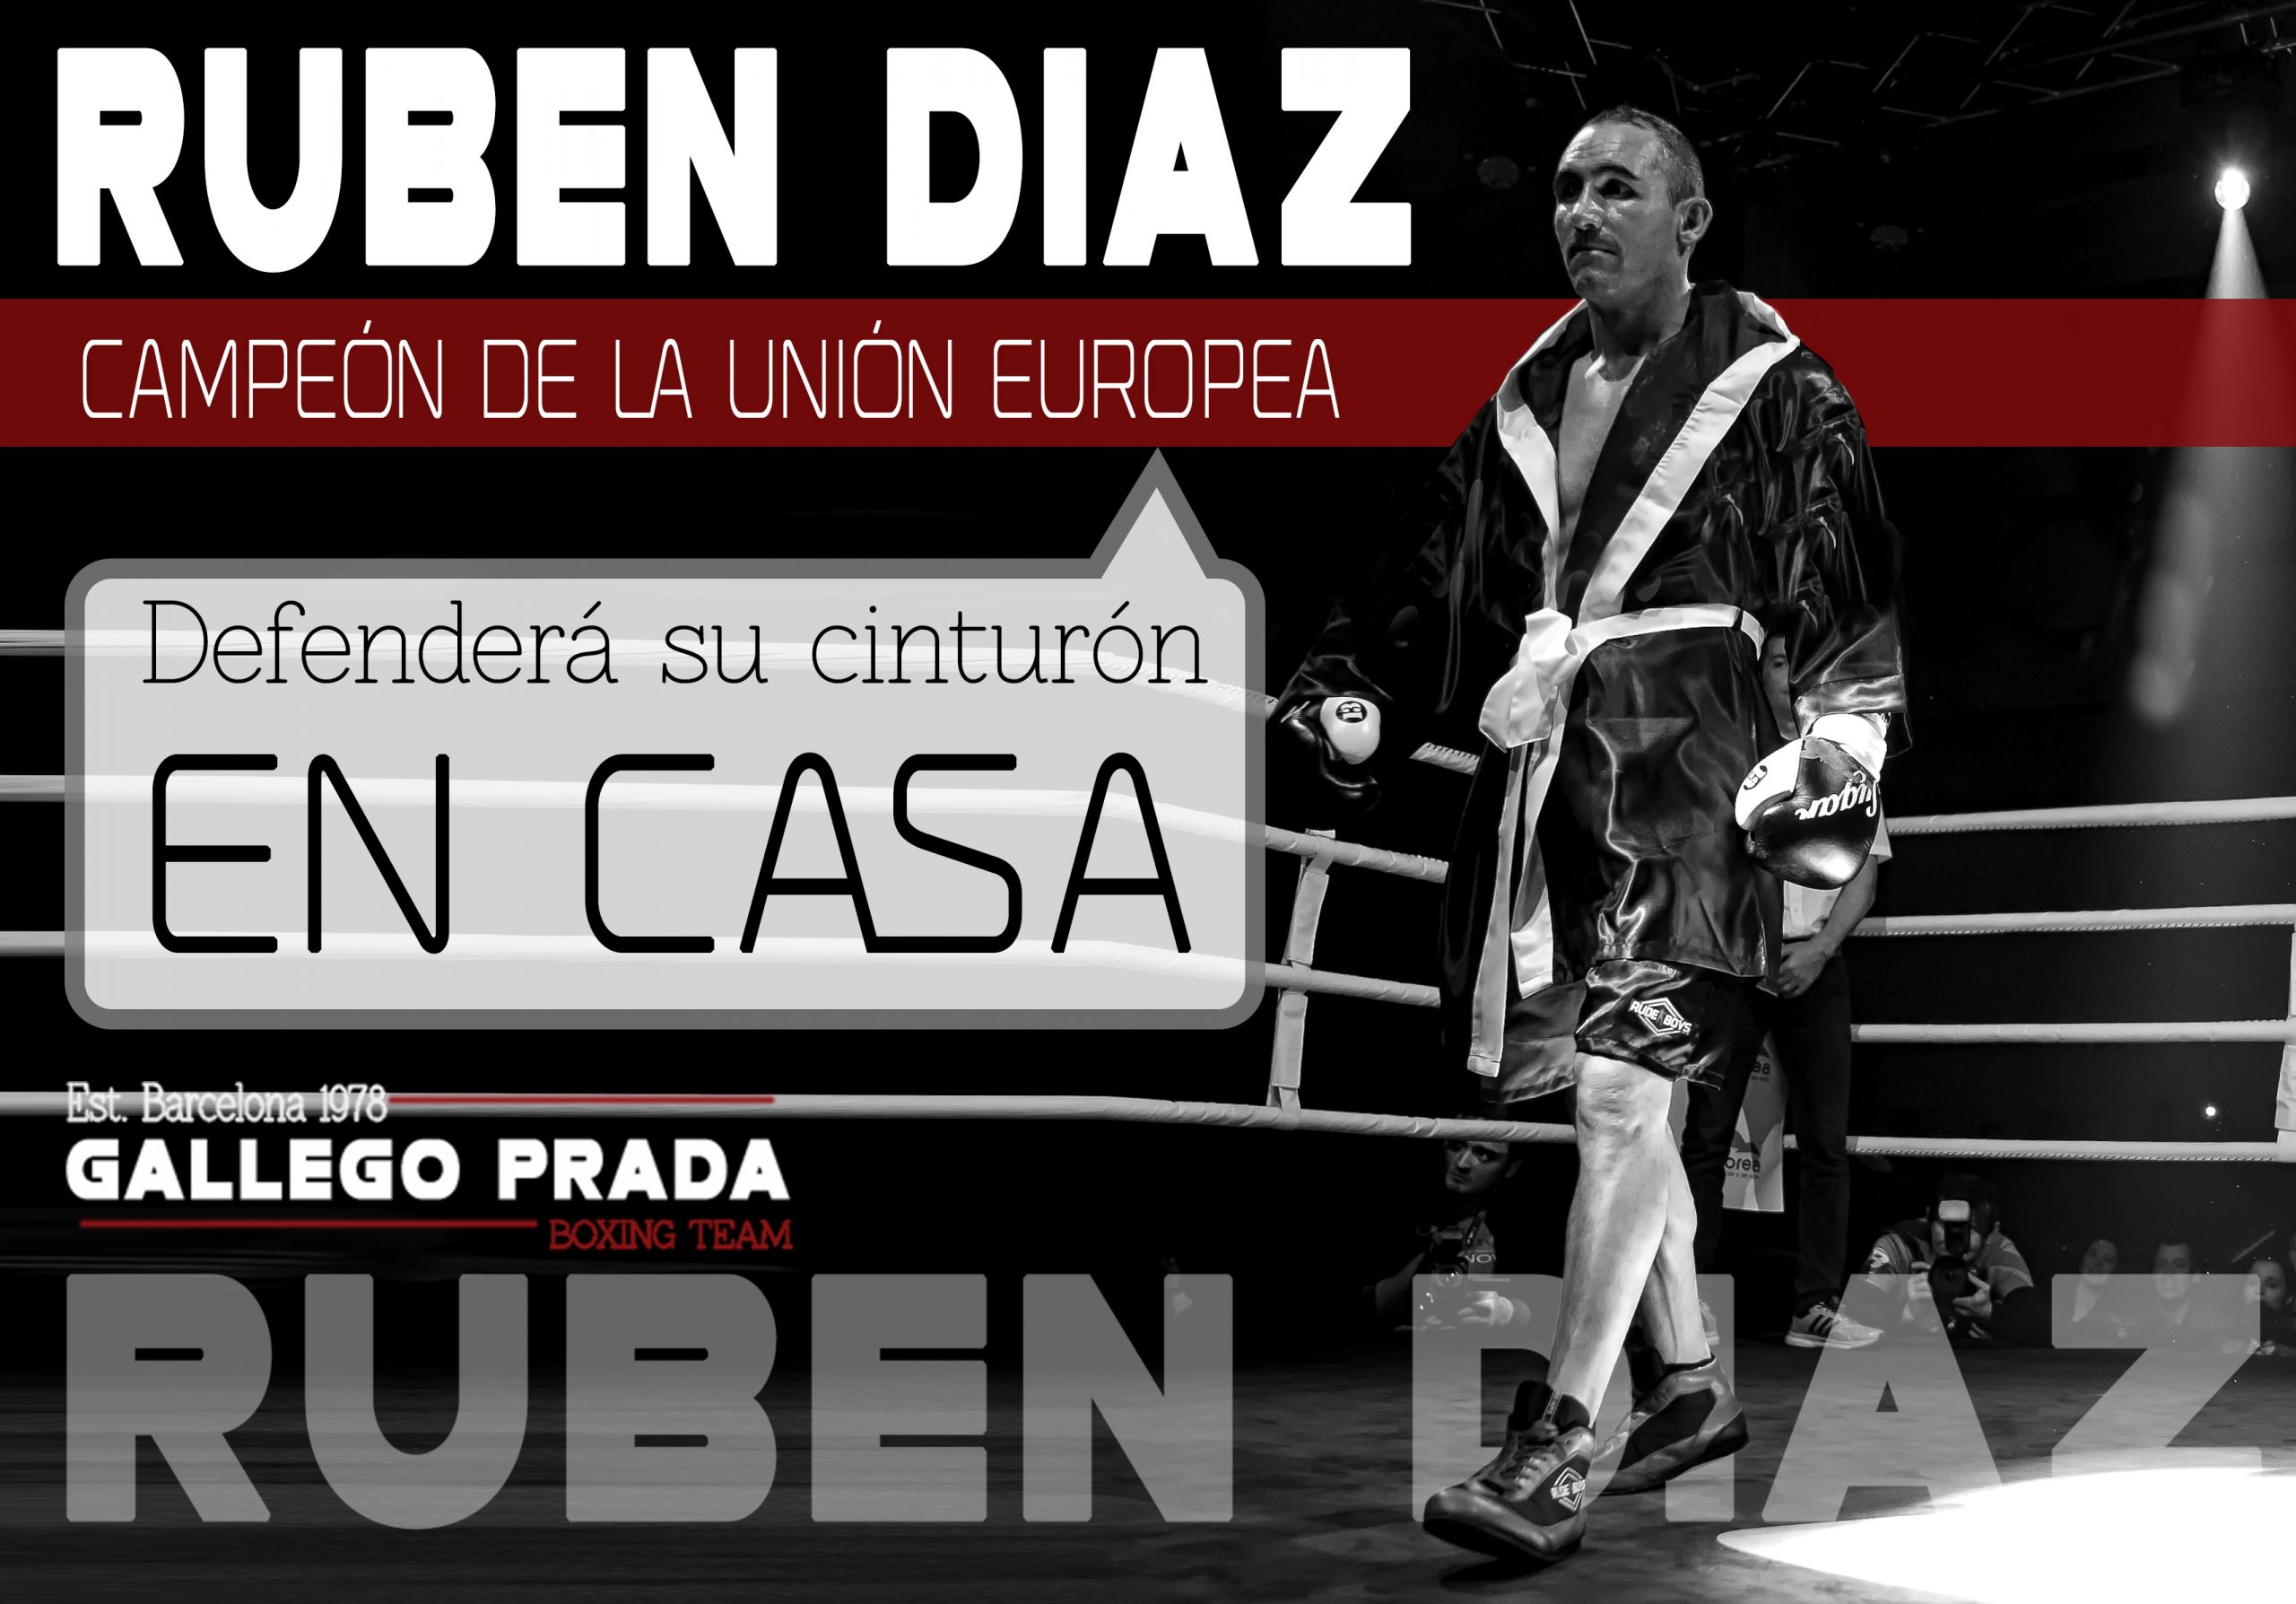 Rubén Díaz defenderá en casa